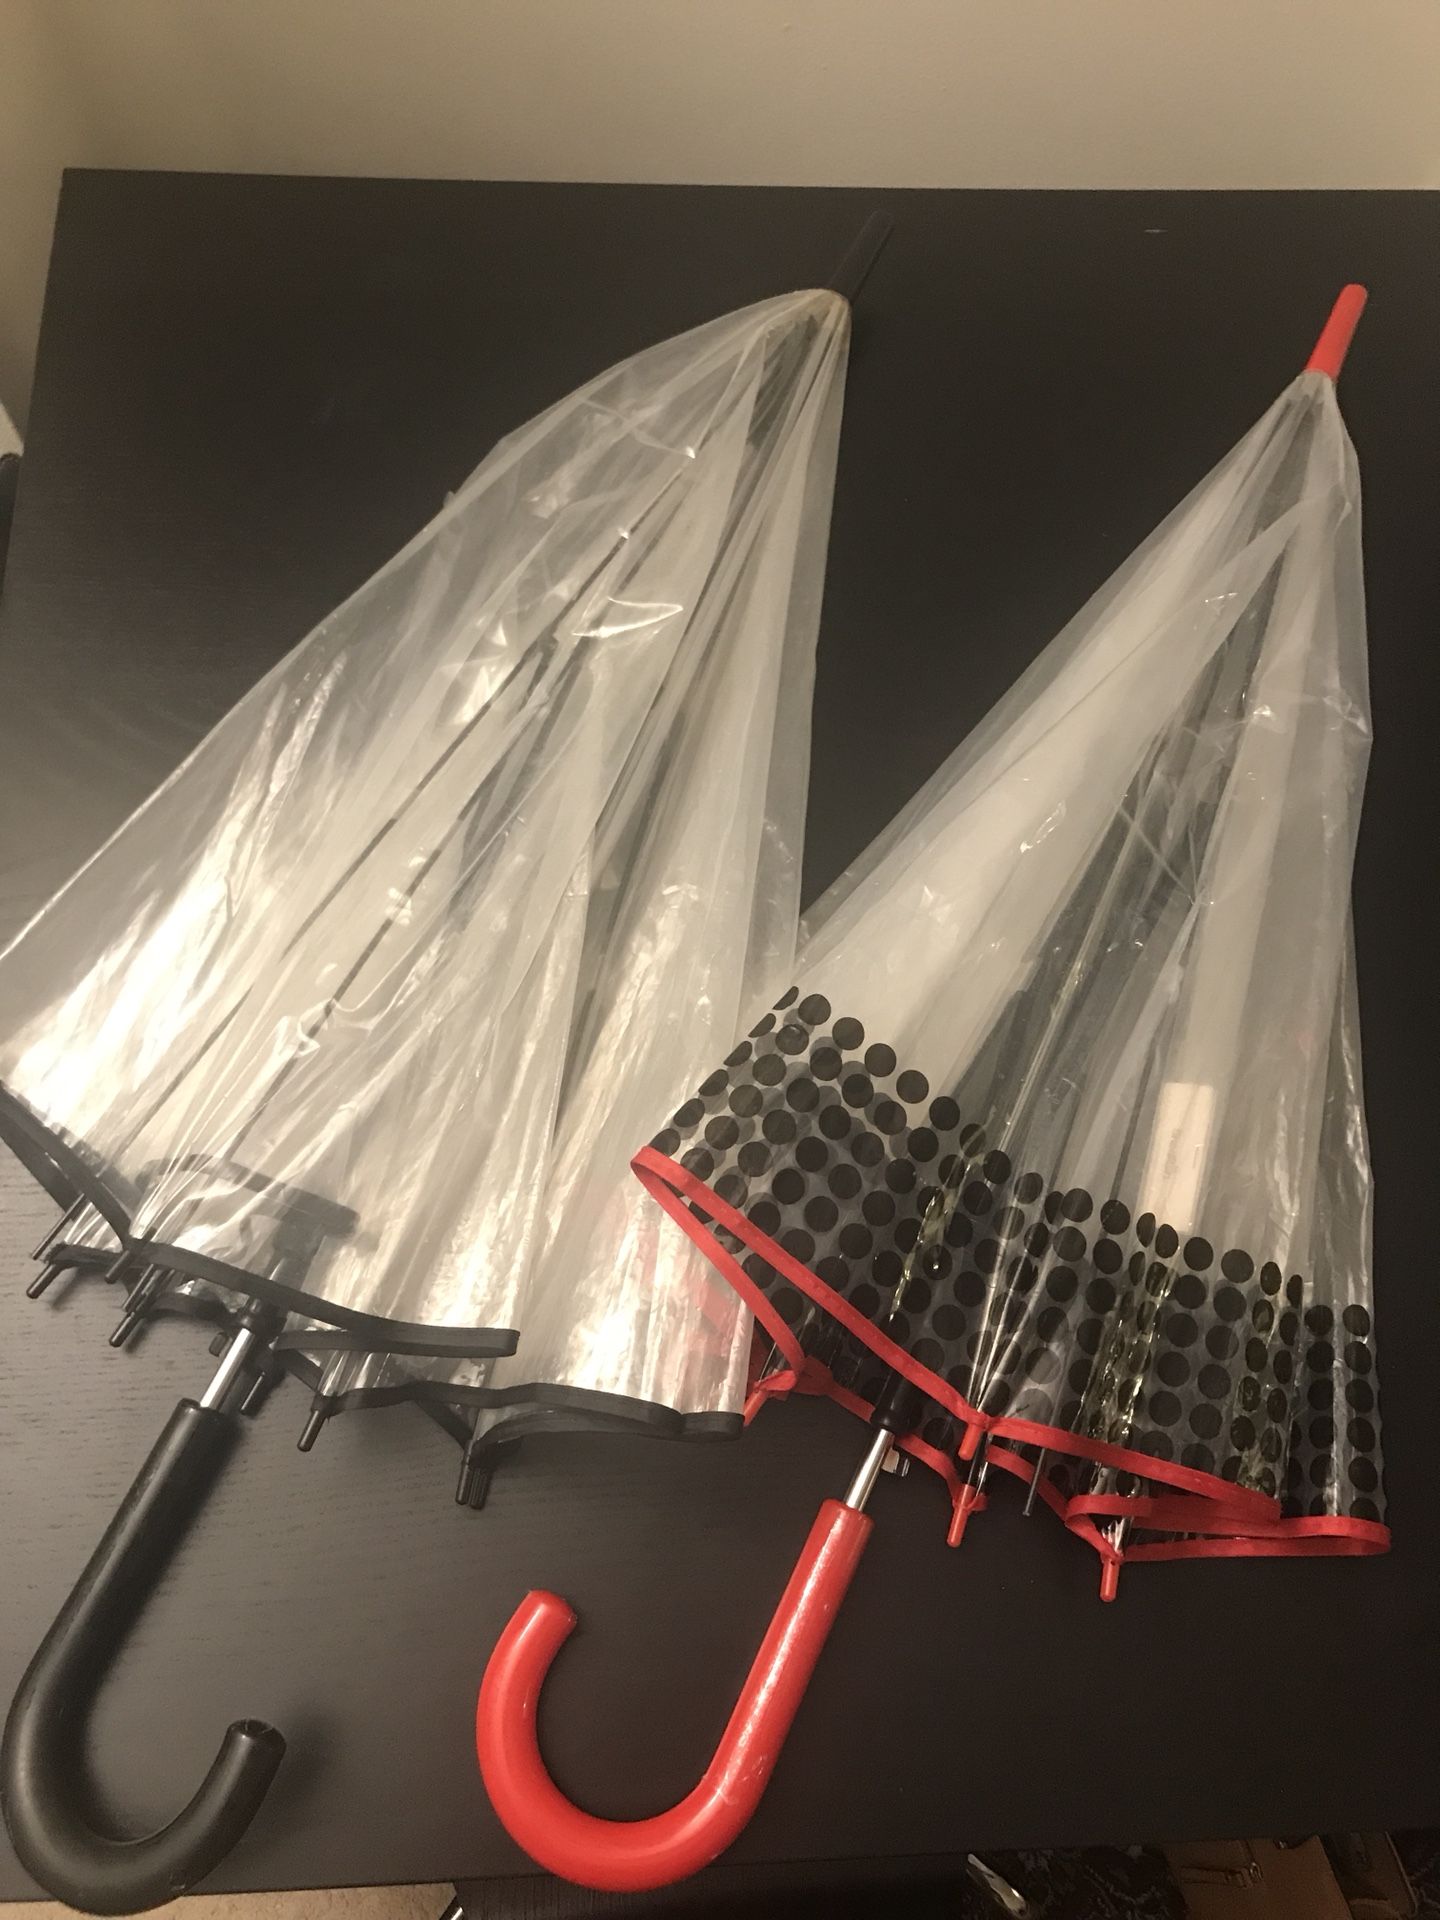 2 Umbrellas